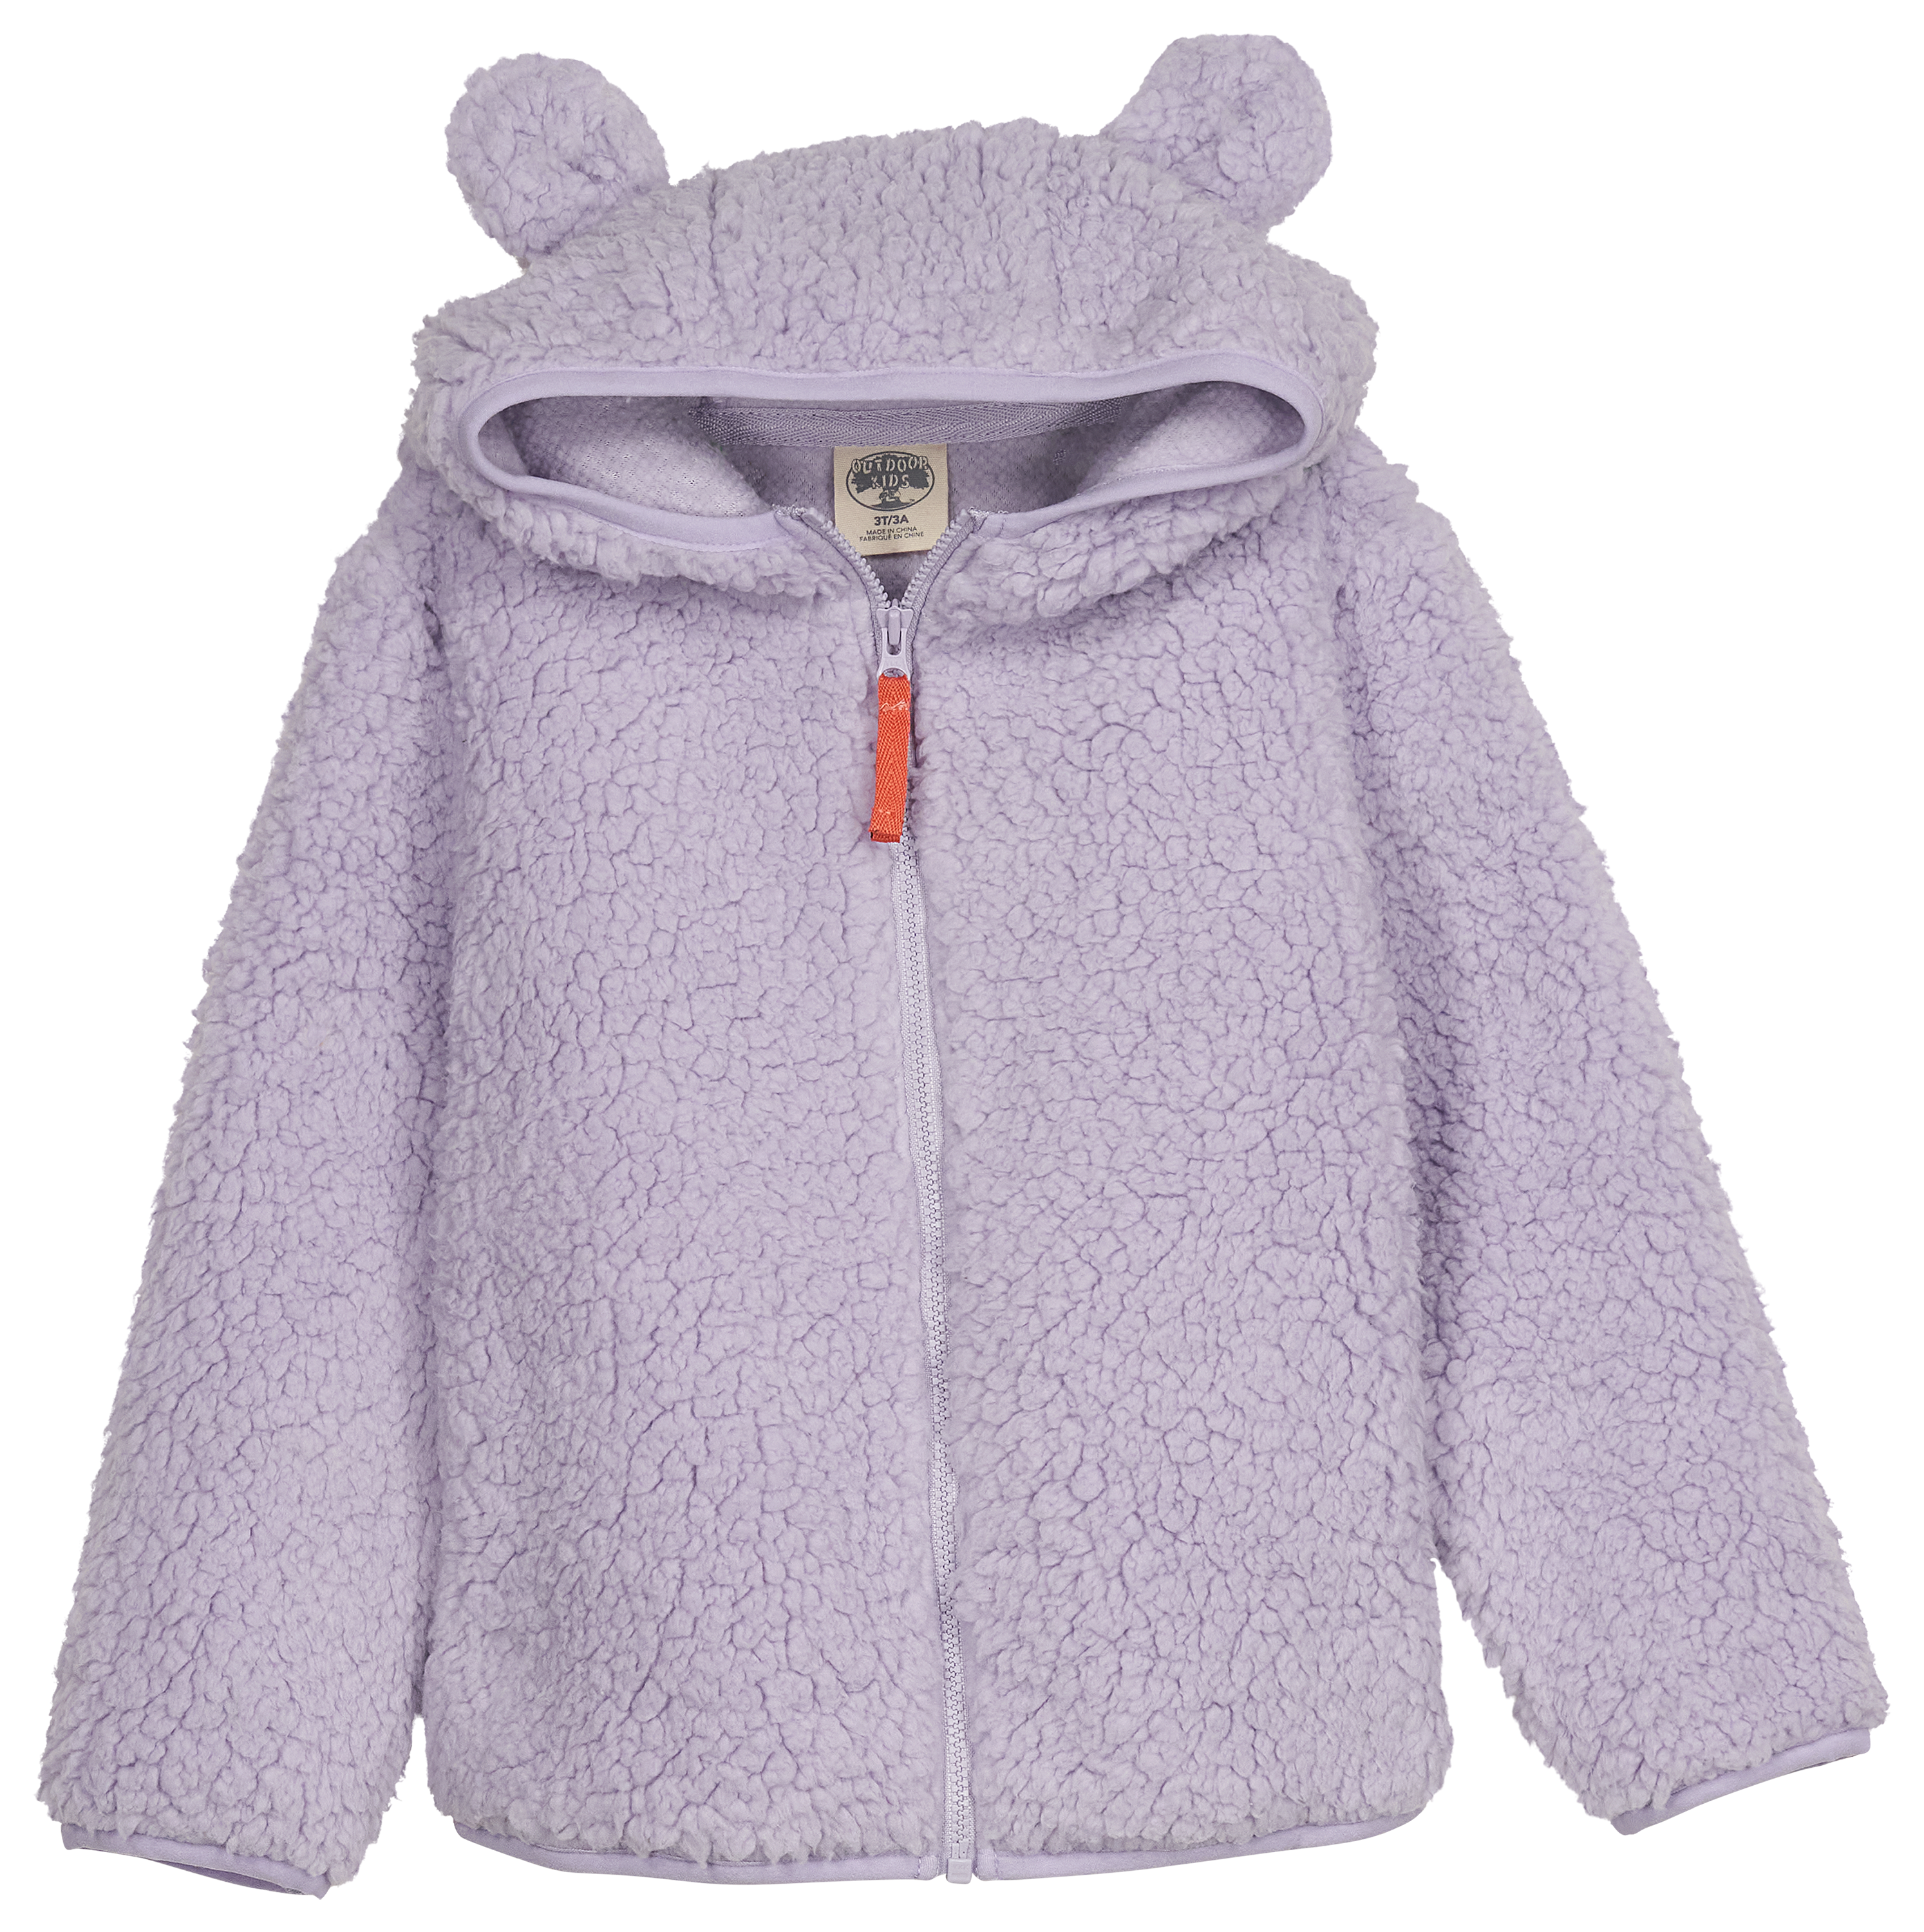 Outdoor Kids Cozy Fleece Full-Zip Hoodie for Babies - Lavender - 12 Months